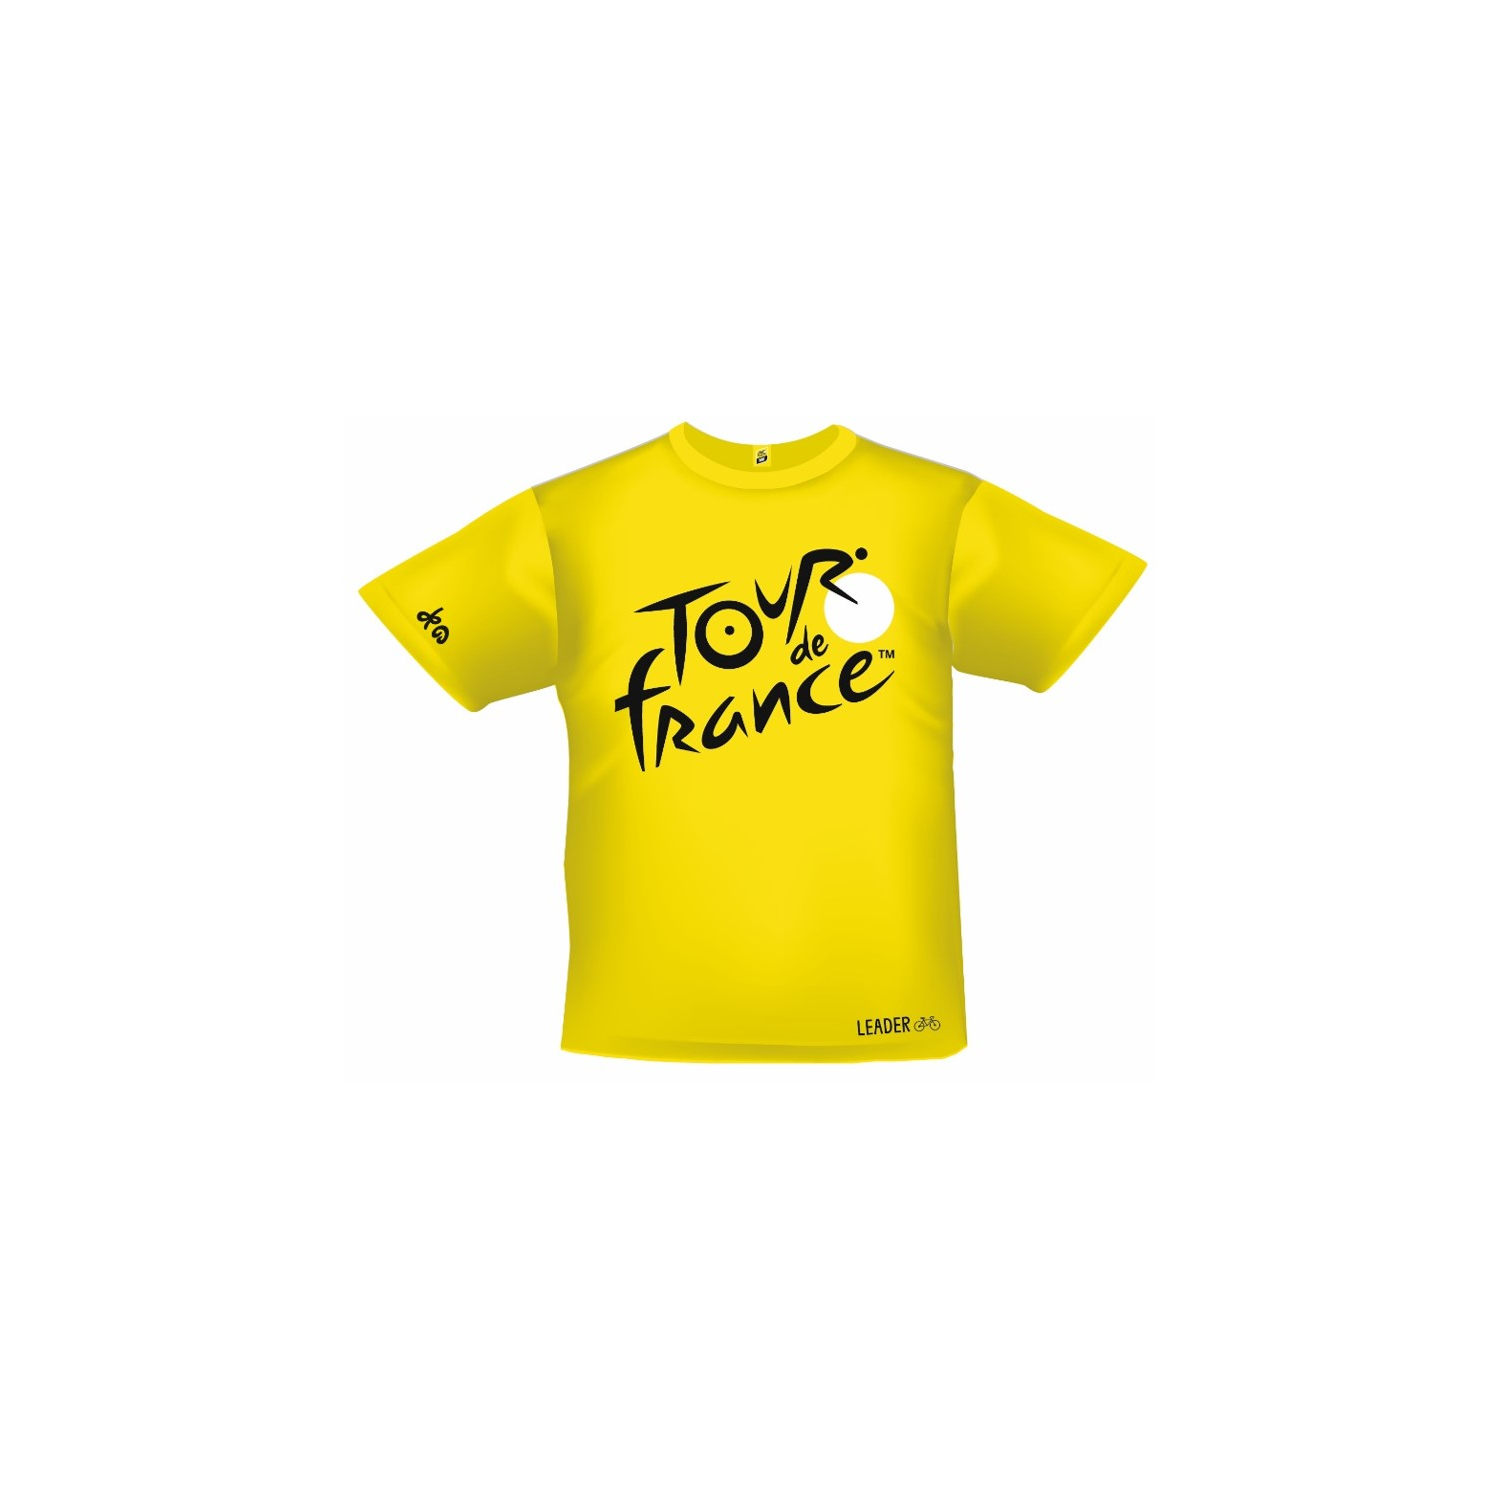 Tour de France Kids Official Fan T-Shirt 